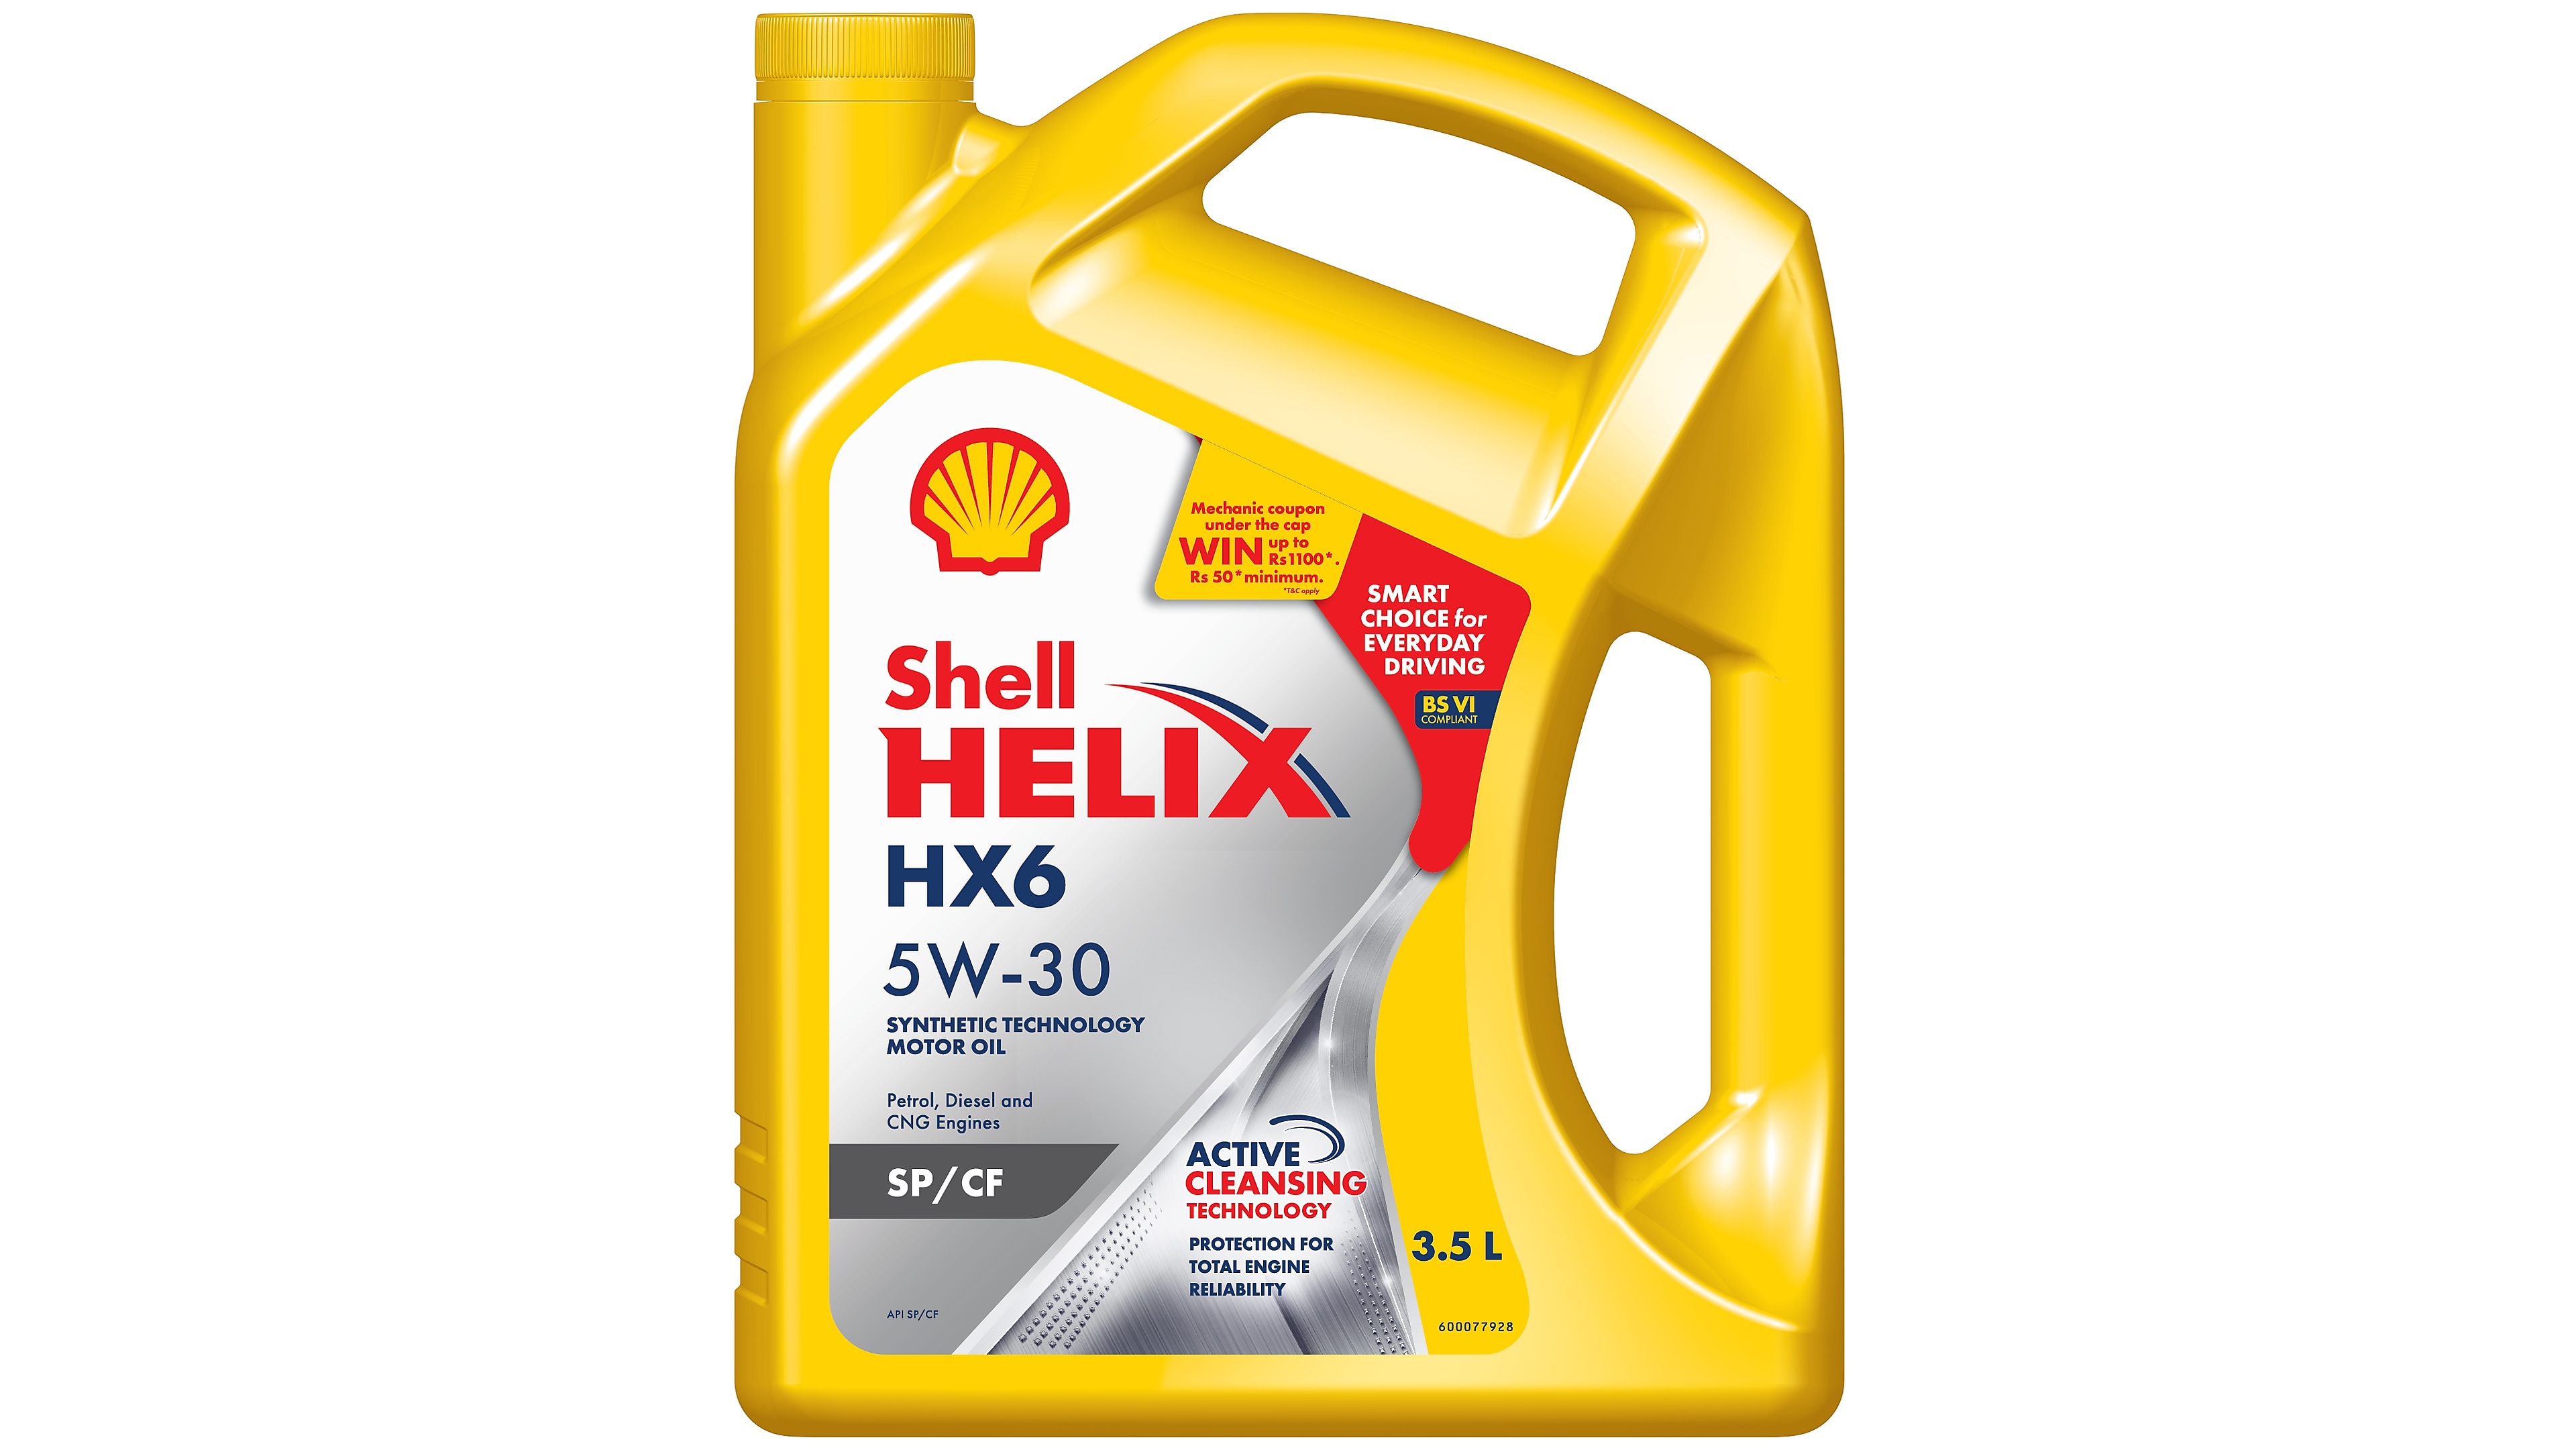 Shell Helix HX6 5W-30 | Shell India